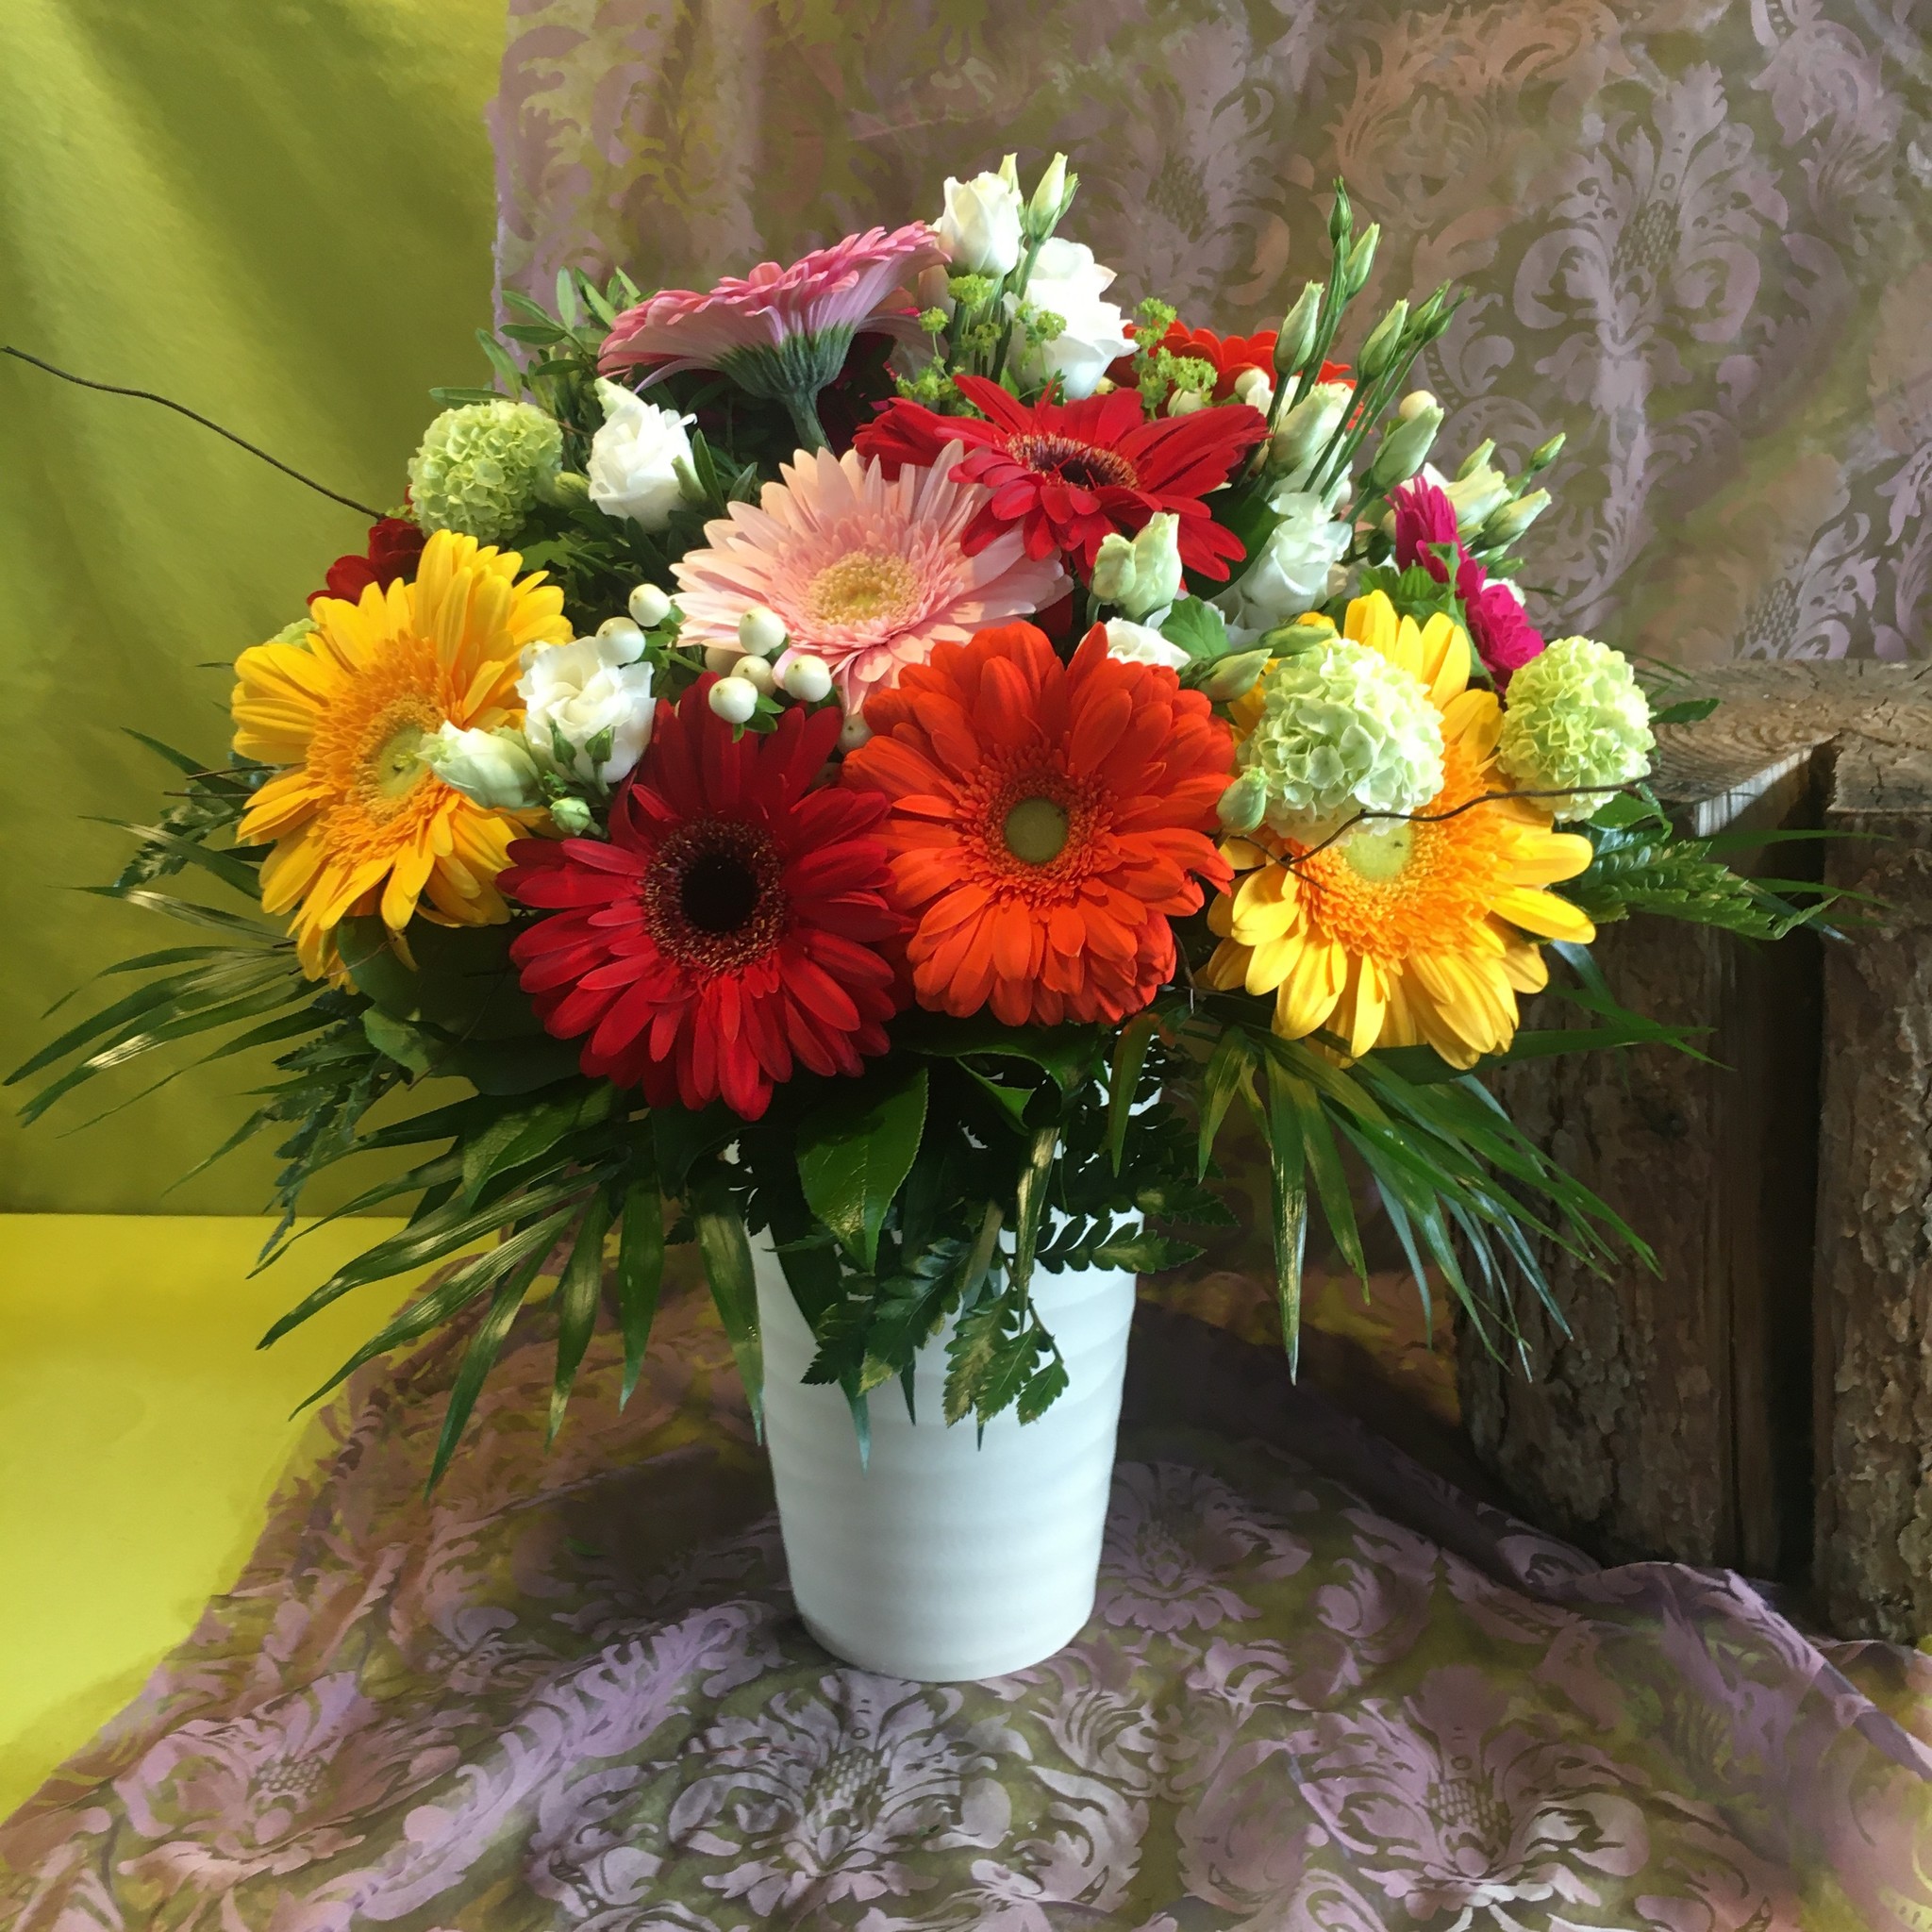 Gerbera  Strauß bunt gemischt mit anderen Blumen XL